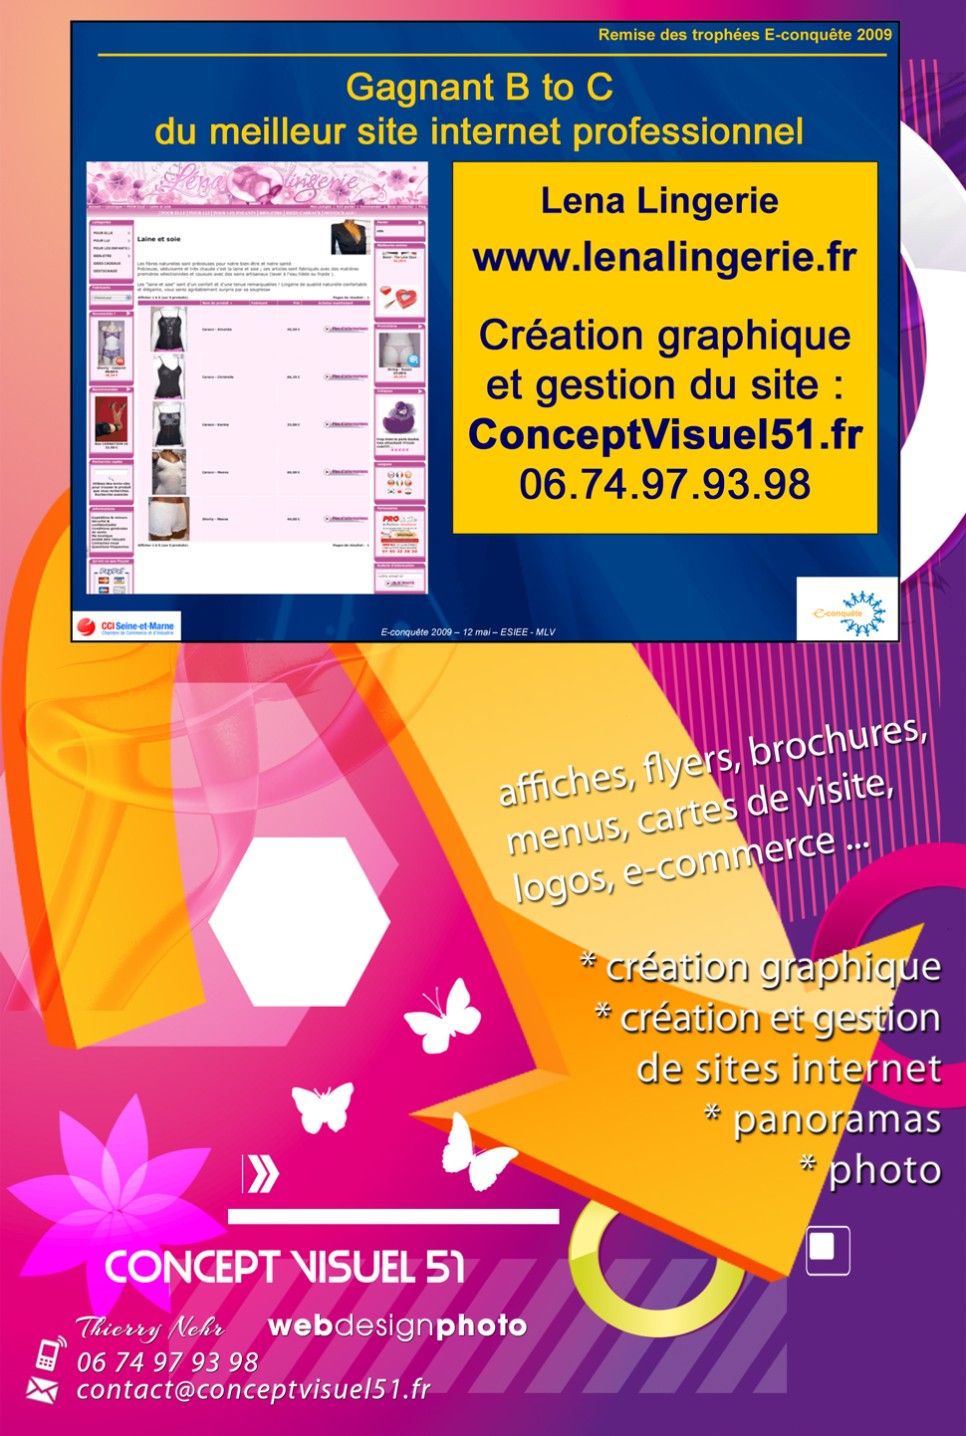 1er prix Lena Lingerie par Concept Visuel 51